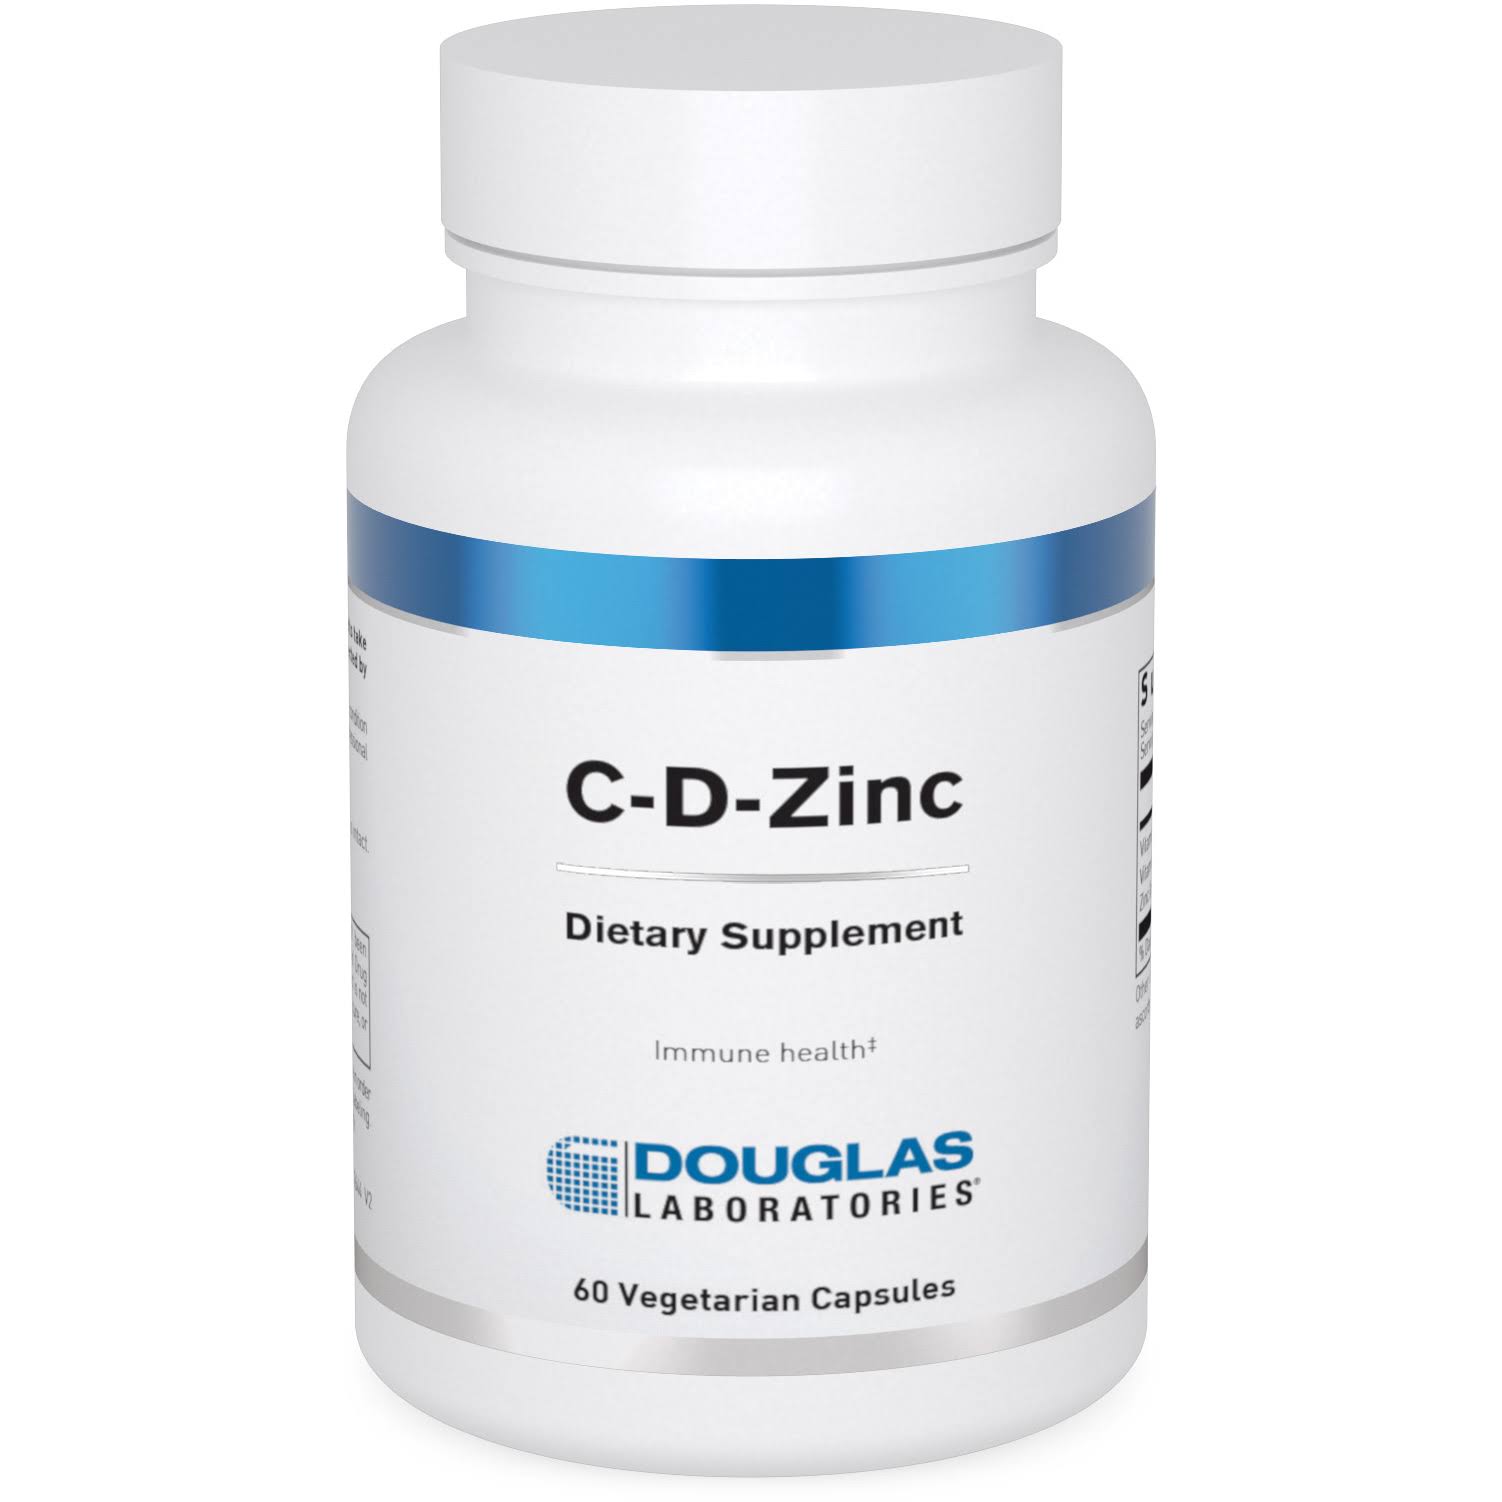 Douglas Laboratories - C-D-Zinc - 60 Capsules, 120 Capsules